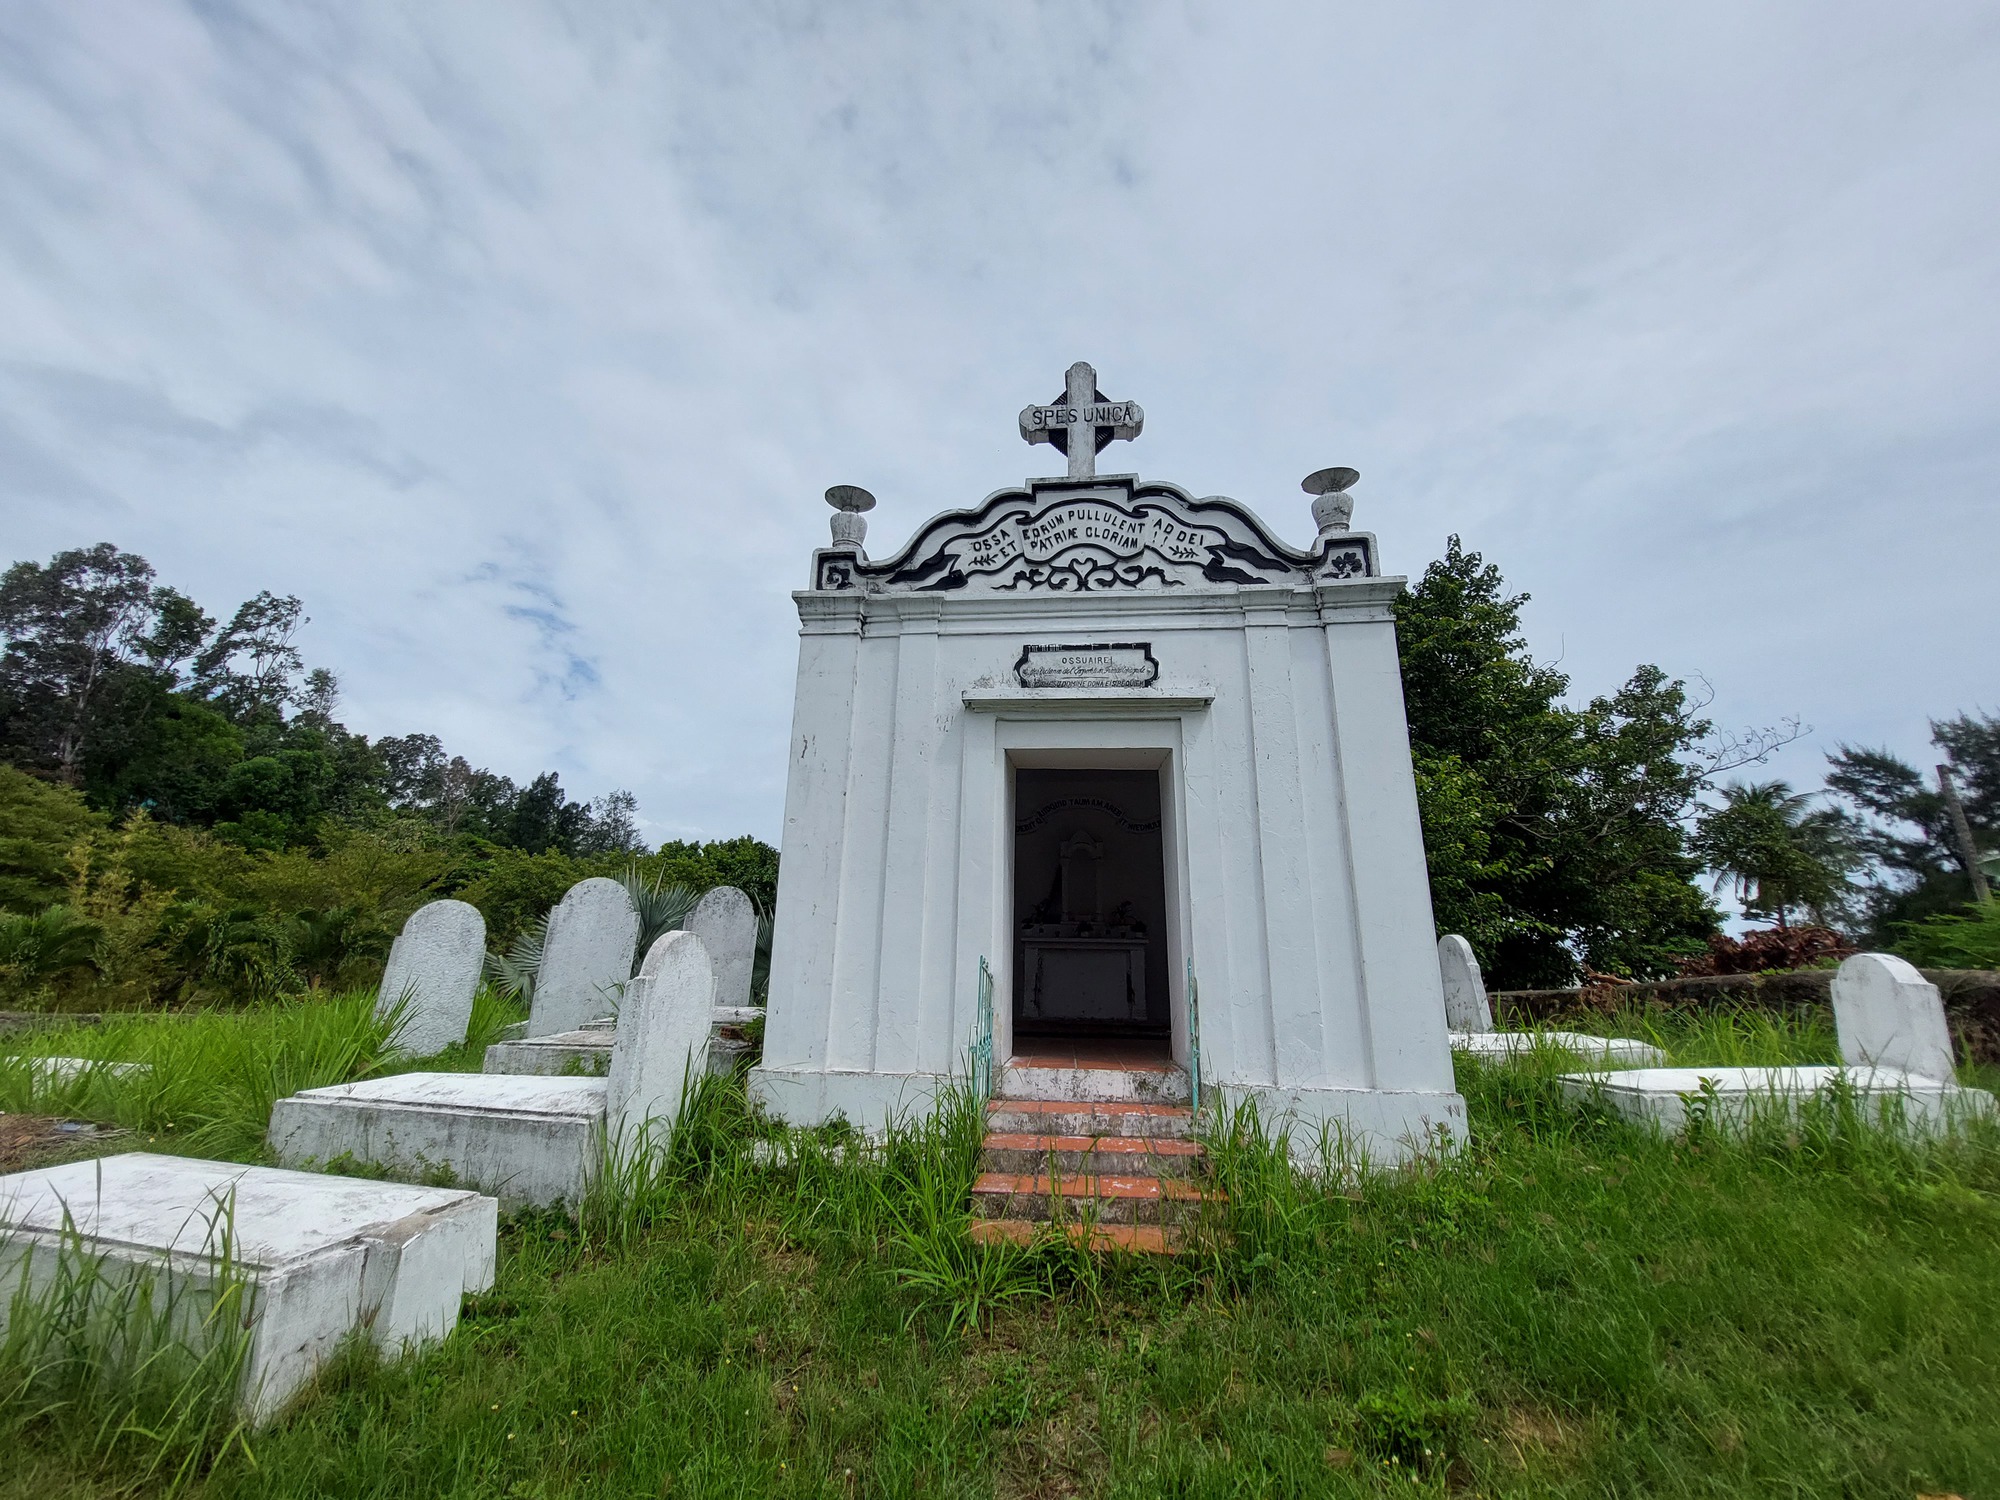 Kỳ lạ 'tháp hài cốt' cùng khu mộ trắng xóa ở bán đảo Sơn Trà - Ảnh 1.